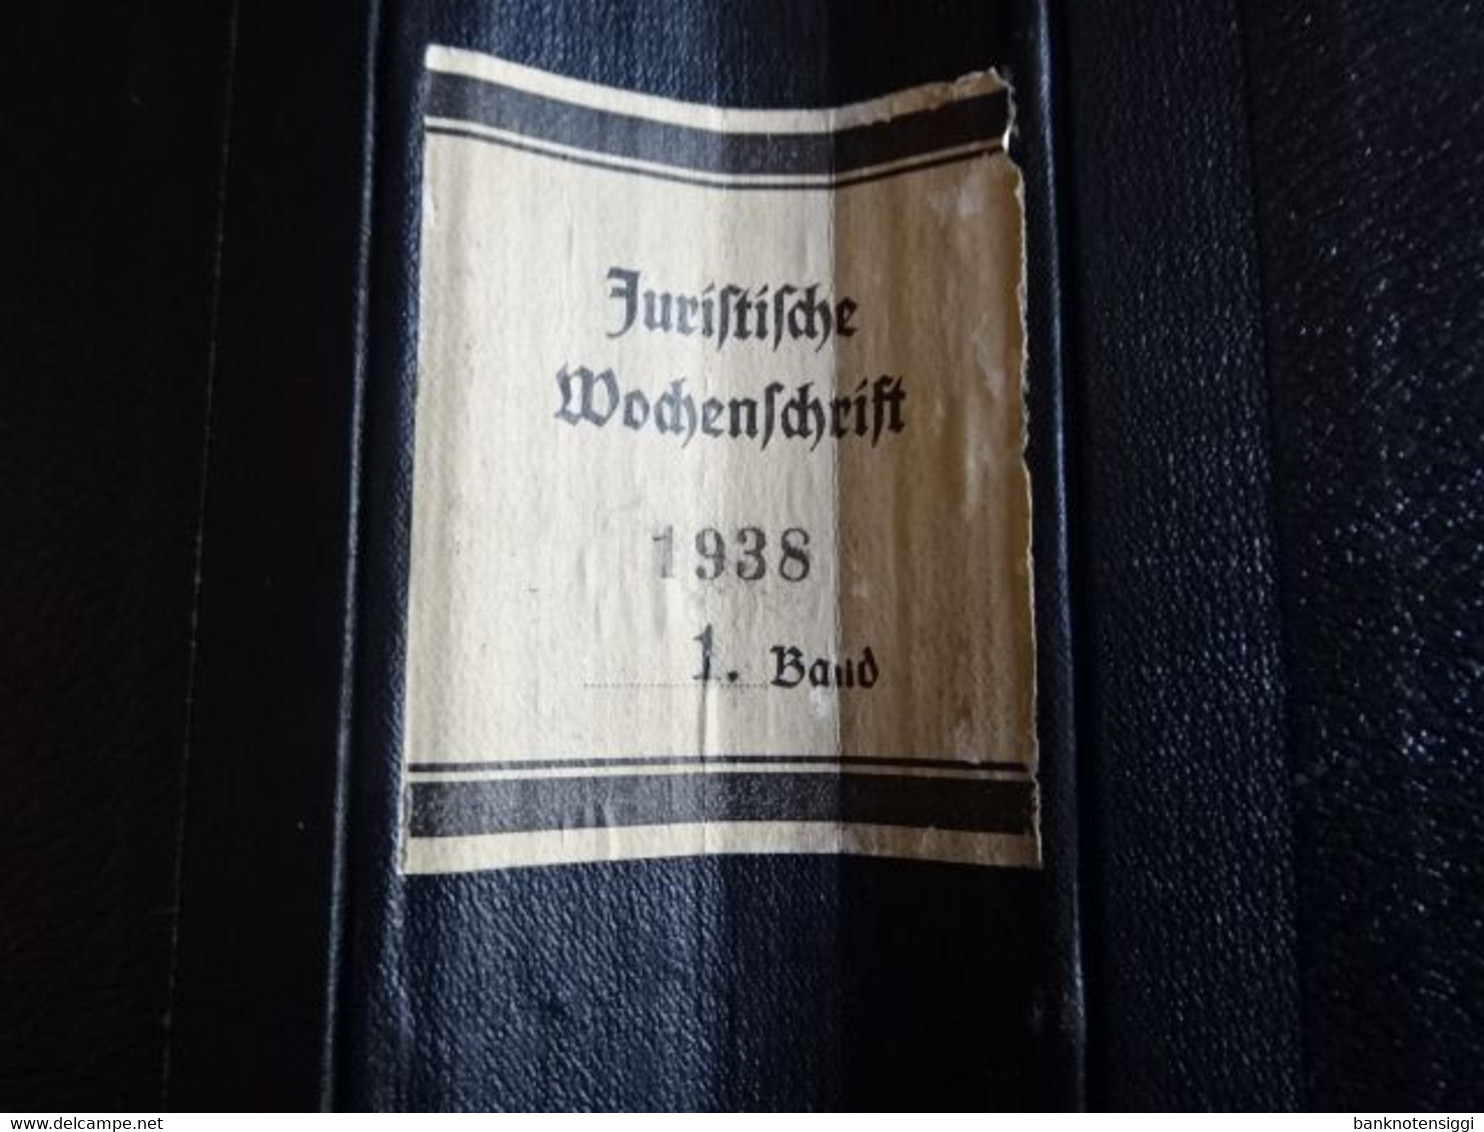 Buch "Juristische Wochenzeitschrift 67 Jahrgang 1938 Band 1 Seite 1-1136 - Rechten